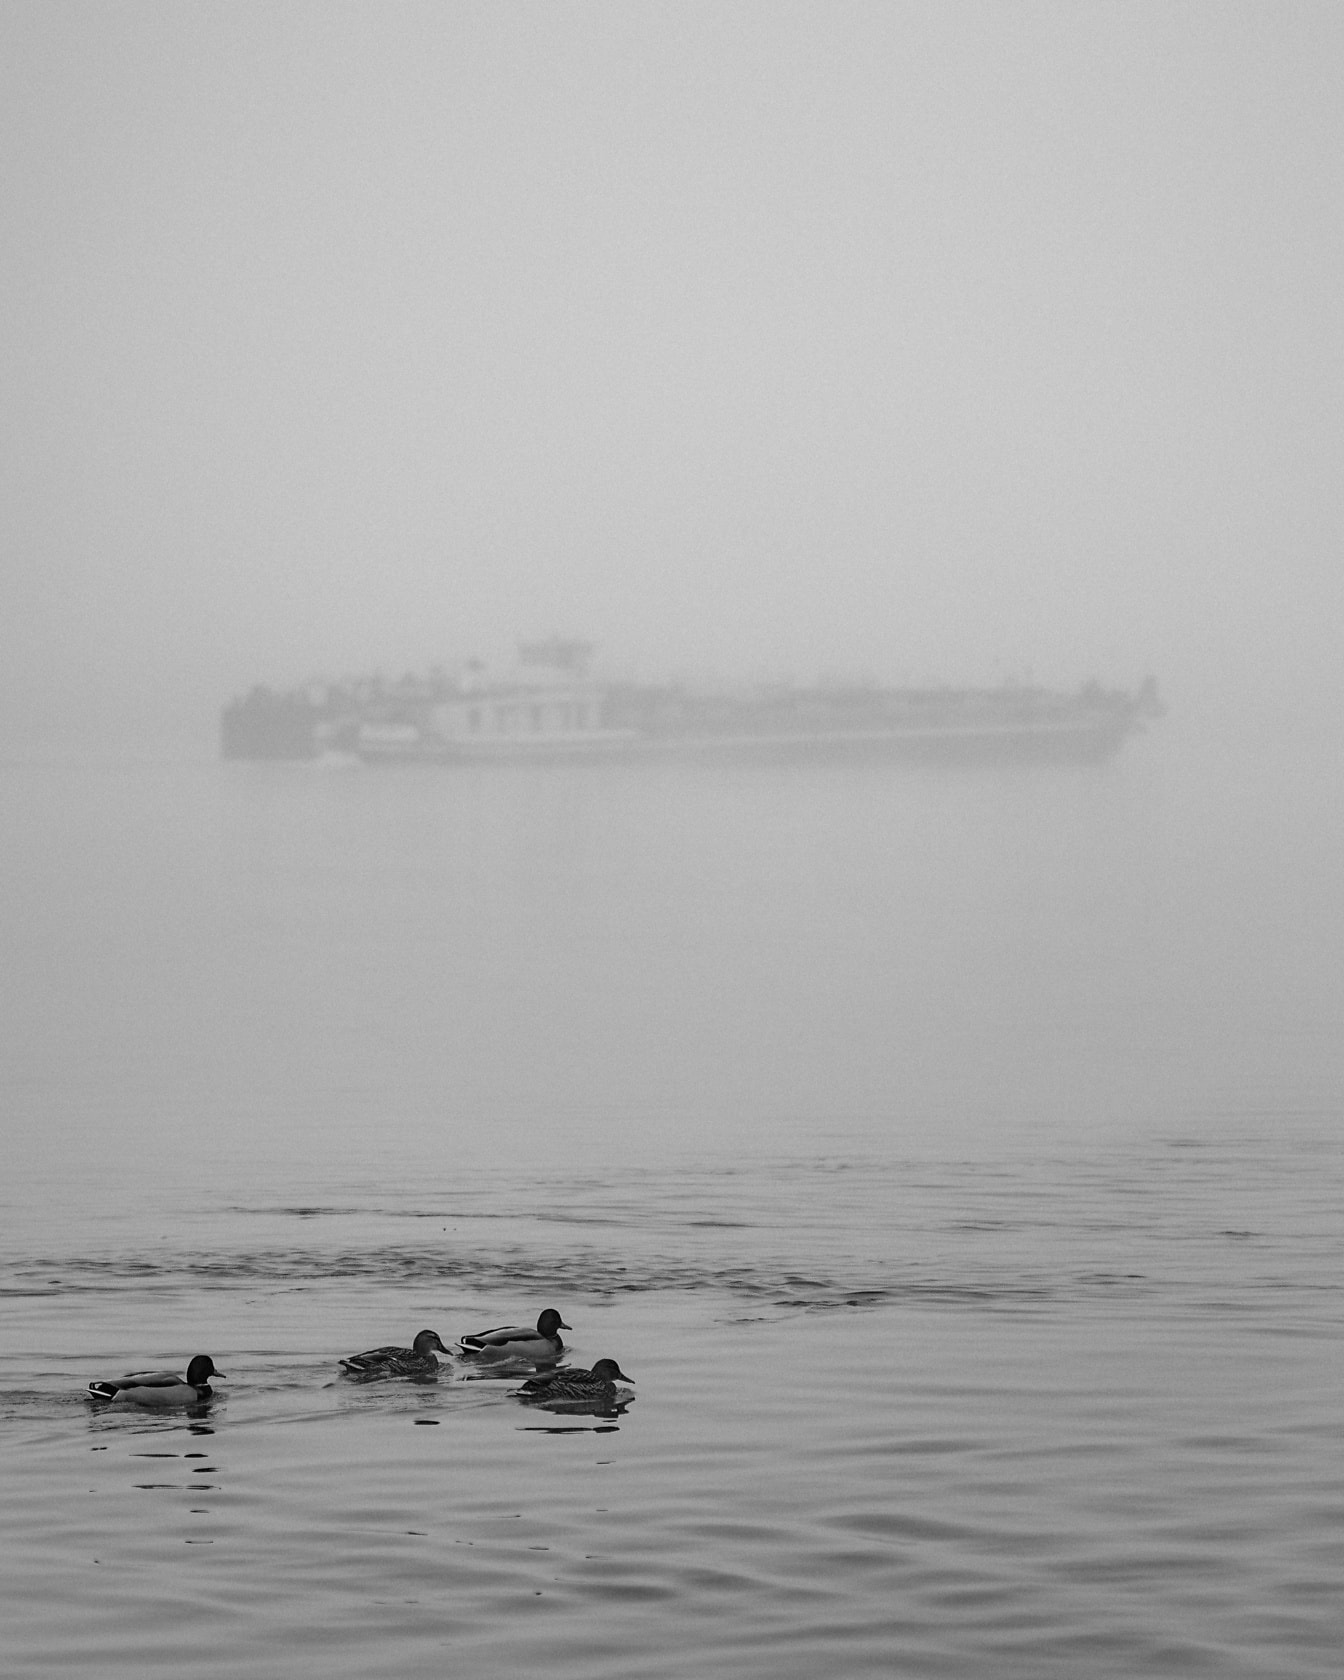 Patos nadando na água com navio em densa neblina no fundo